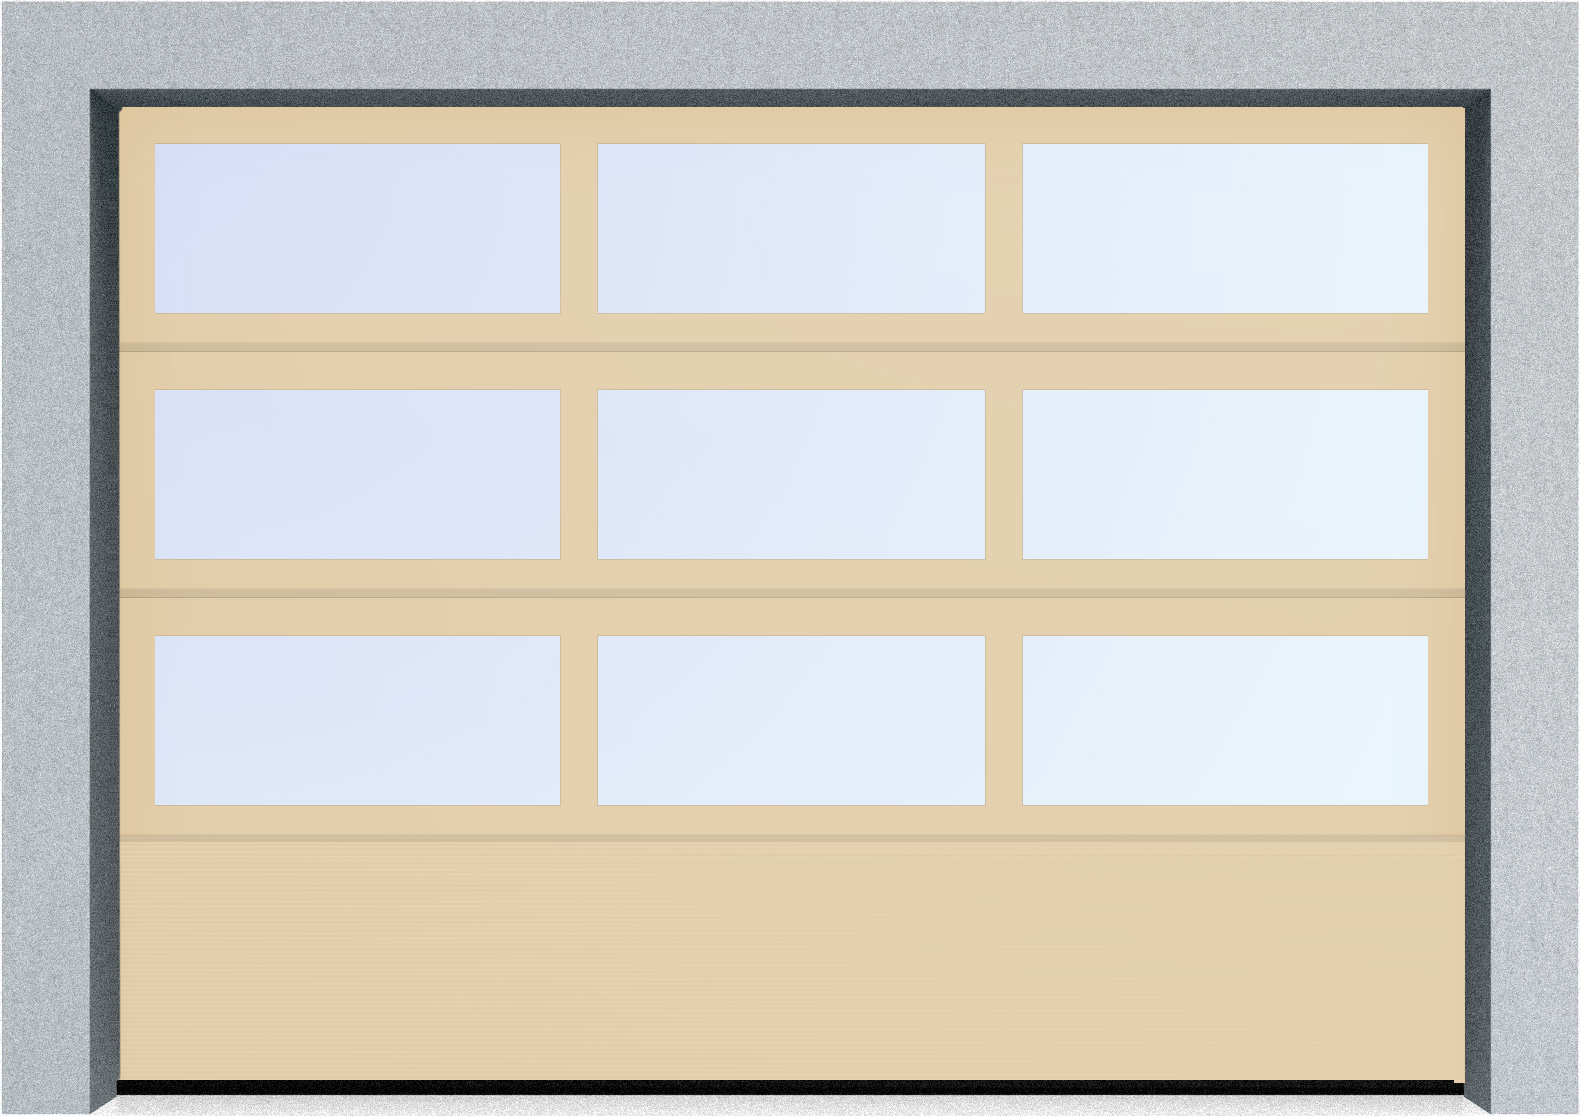  Секционные панорамные ворота серии AluTrend с комбинированным типом полотна (АЛПС) 5125х6000 нижняя панель S-гофр, Микроволна стандартные цвета, фото 1 